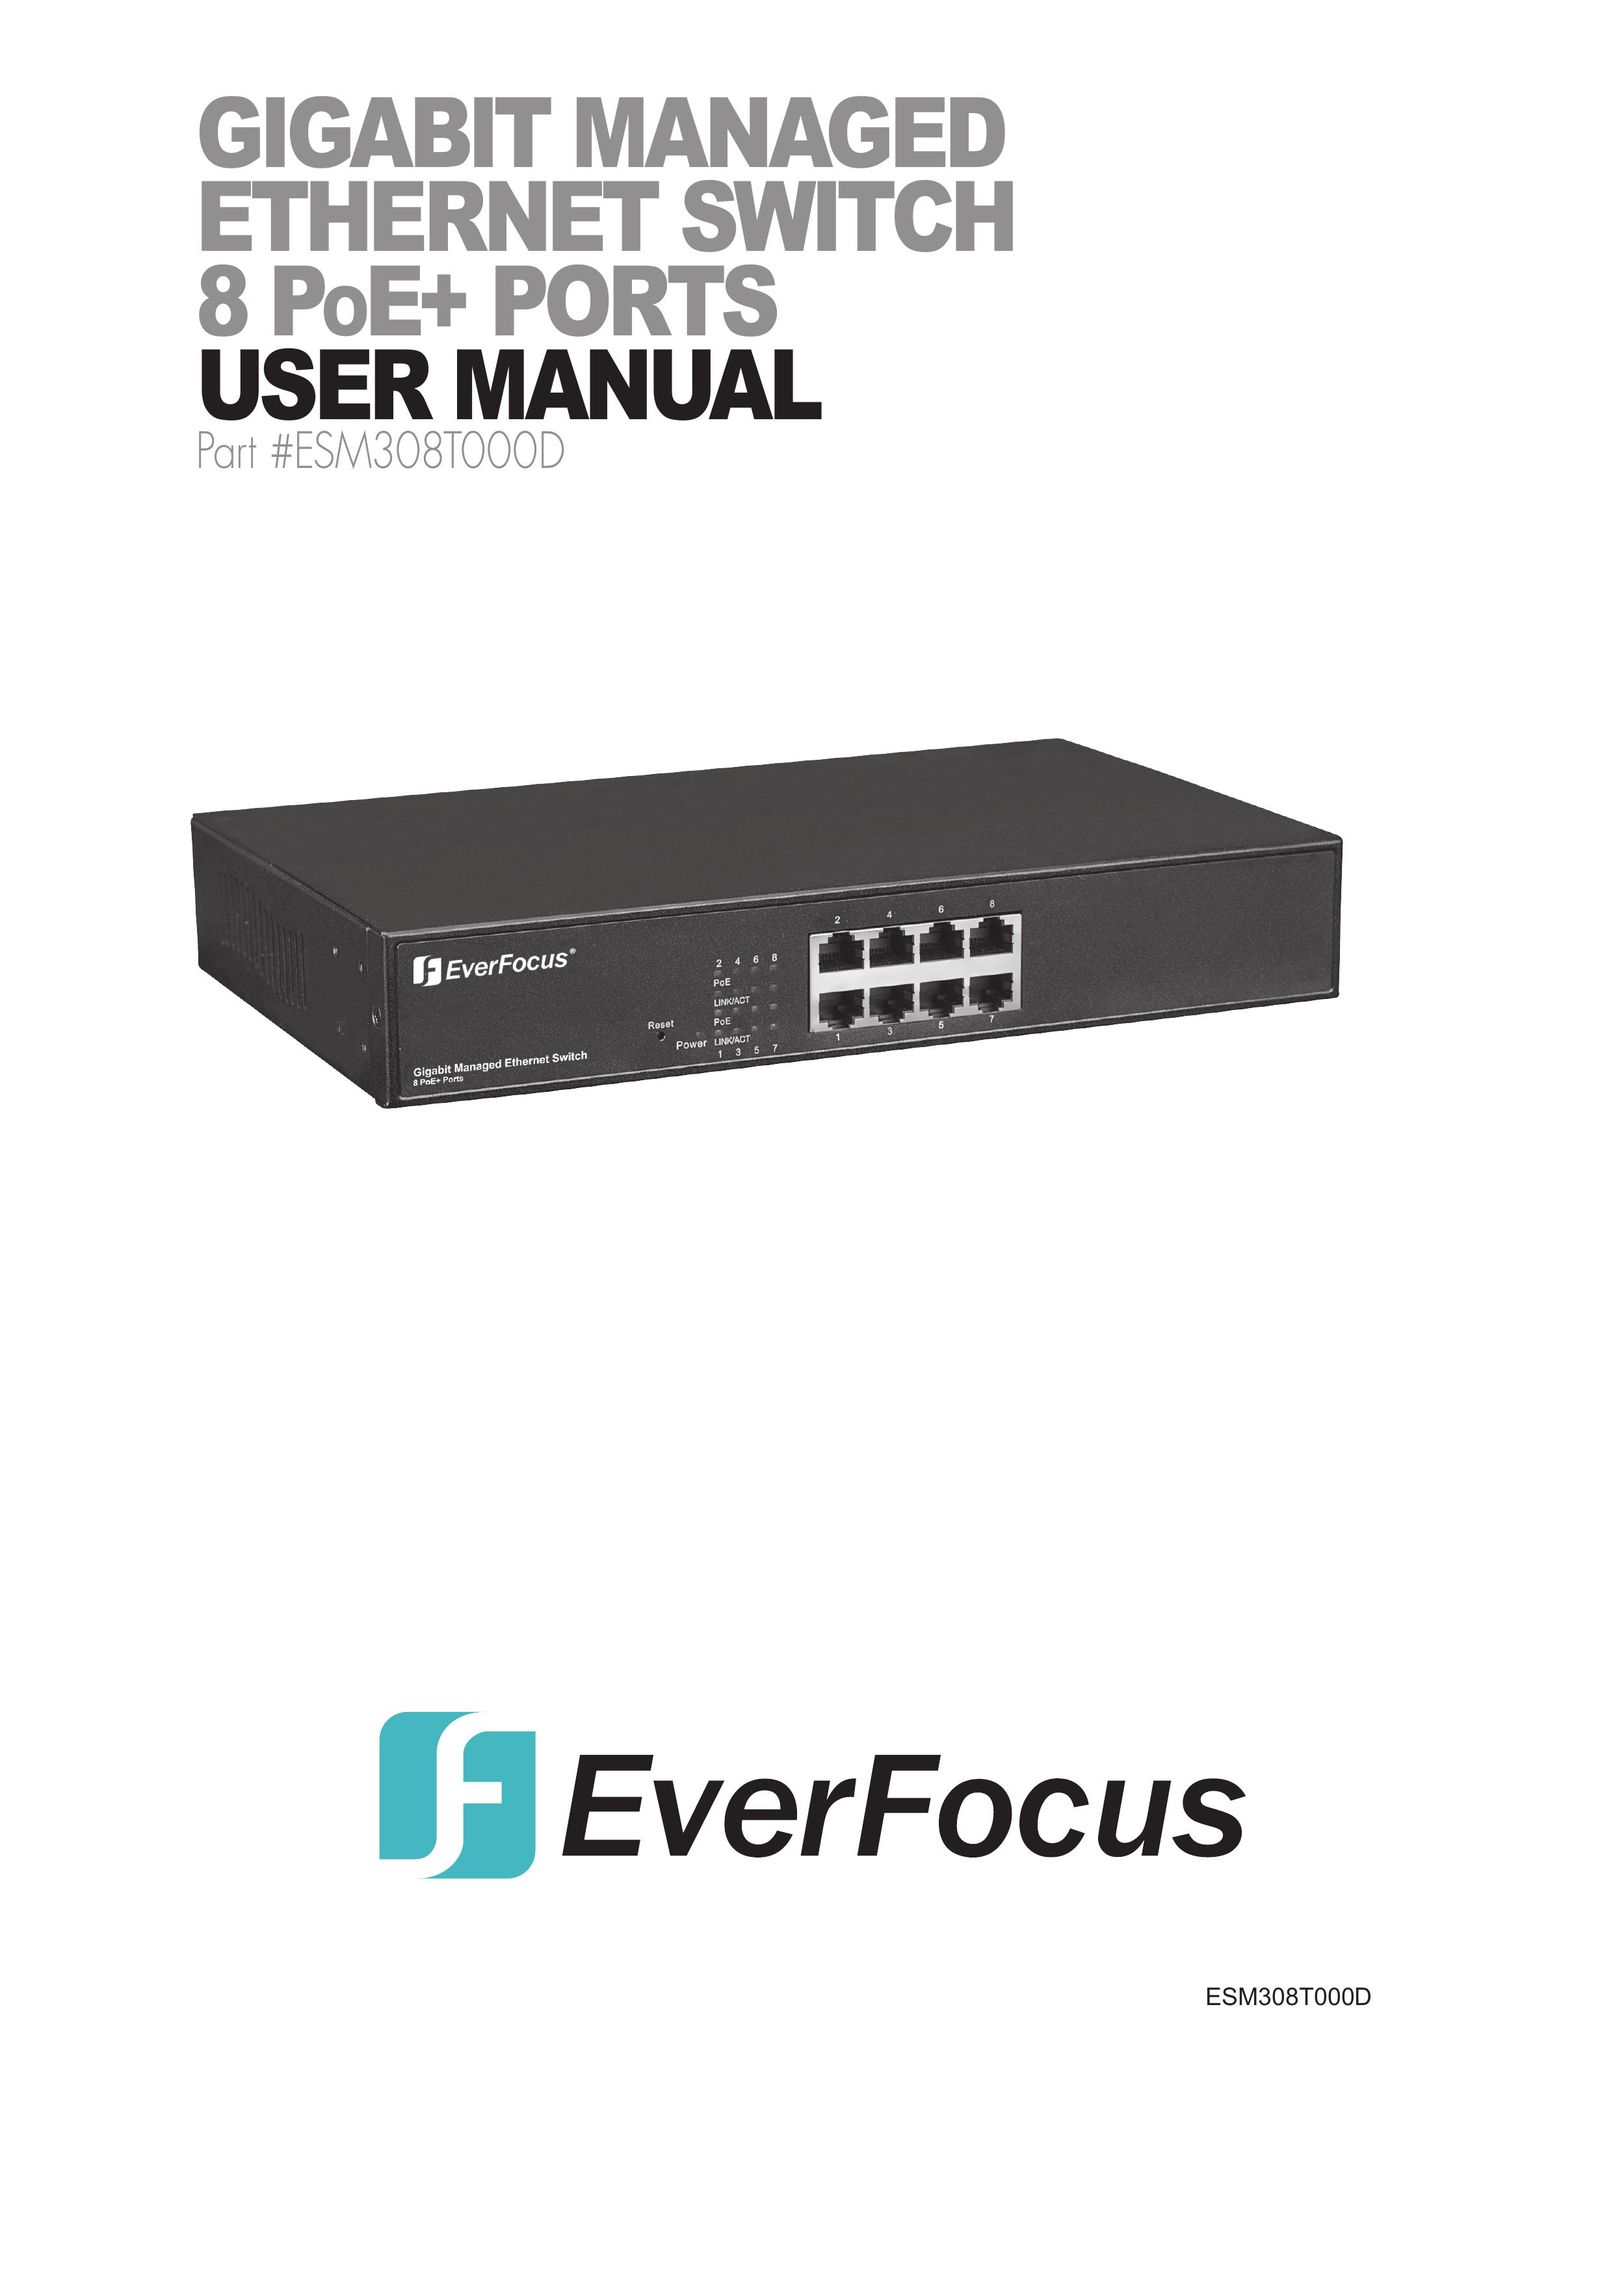 EverFocus ESM308T000D Switch User Manual